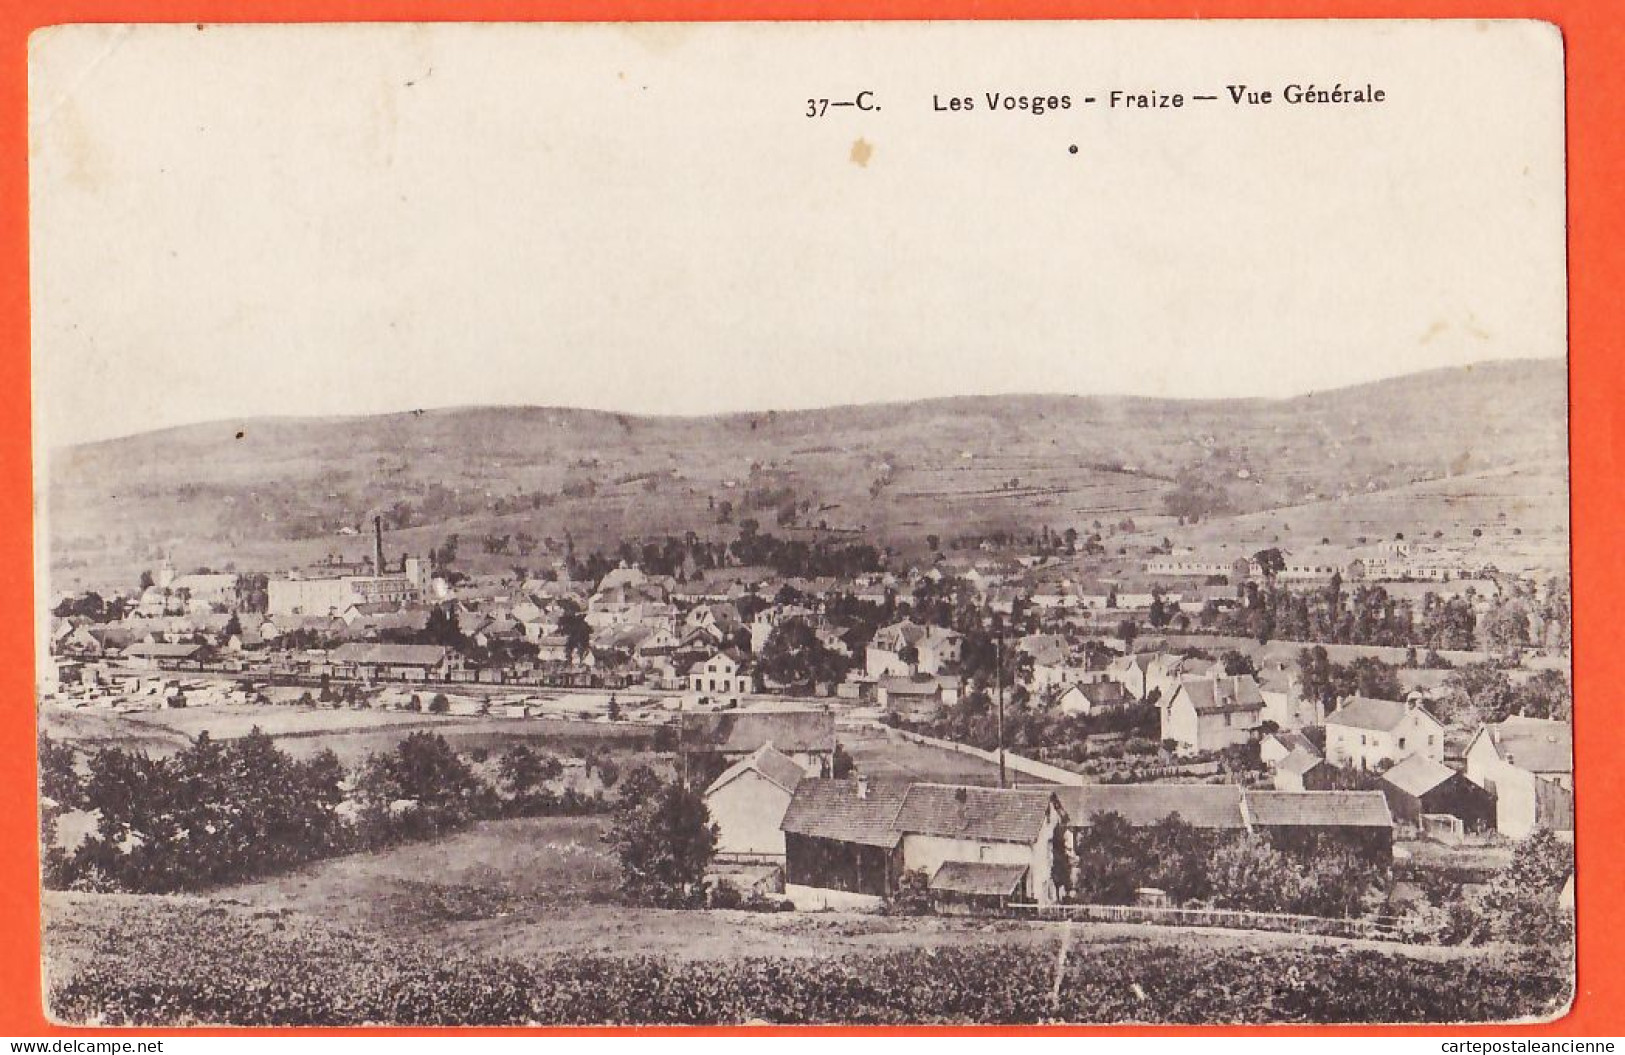 05795 / FRAIZE 88-Vosges Vue Générale 1915 Du Poilu CHOLVY à Veuve Amélie BAUDOT Café Dembourg Albi CpaWW1 37-C - Fraize